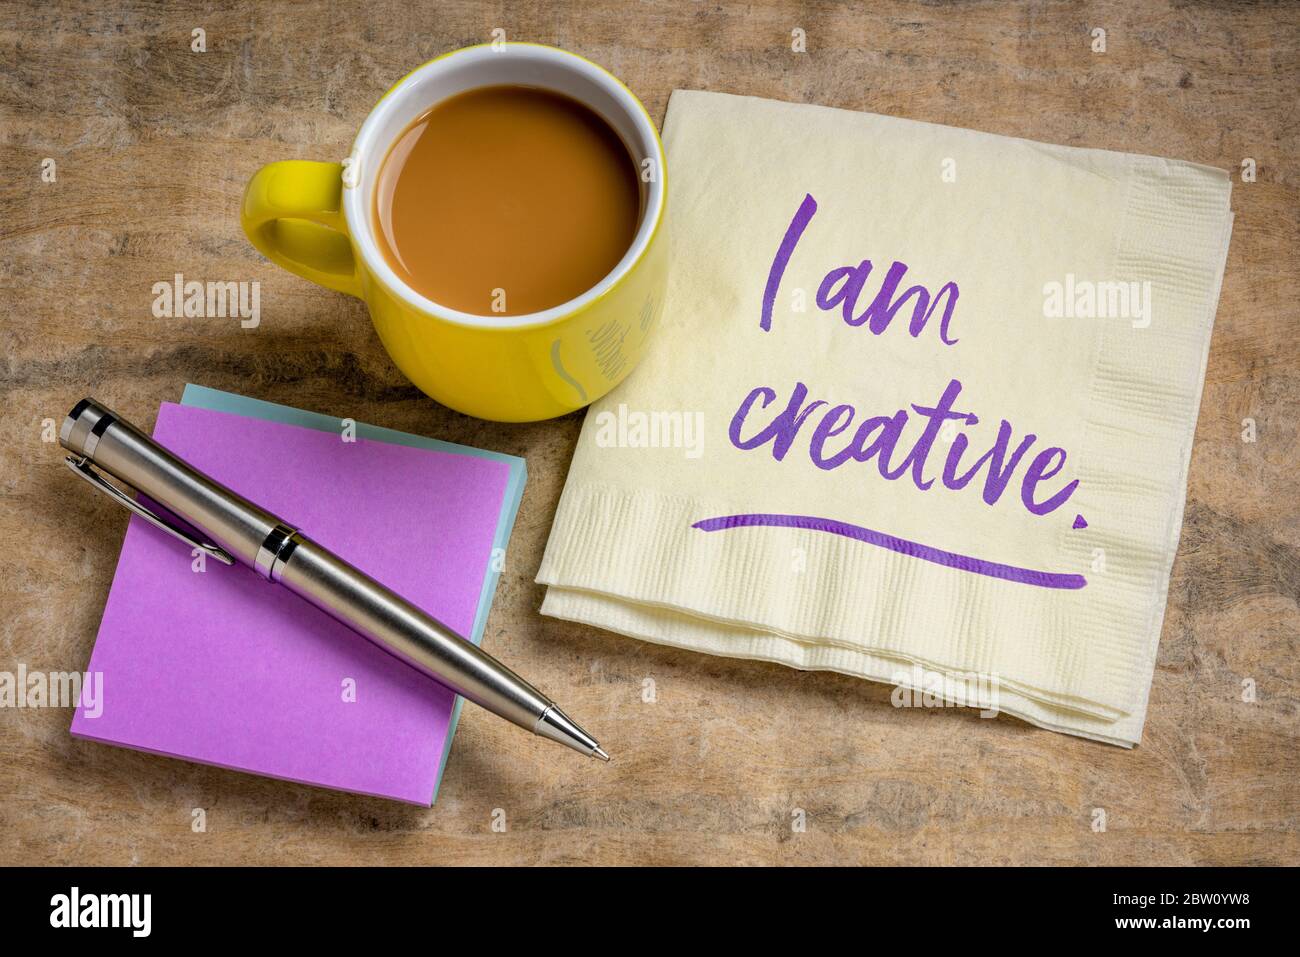 Ich bin kreativ positive Affirmation - Handschrift auf Serviette mit Kaffee, Kreativität und persönlichem Entwicklungskonzept Stockfoto